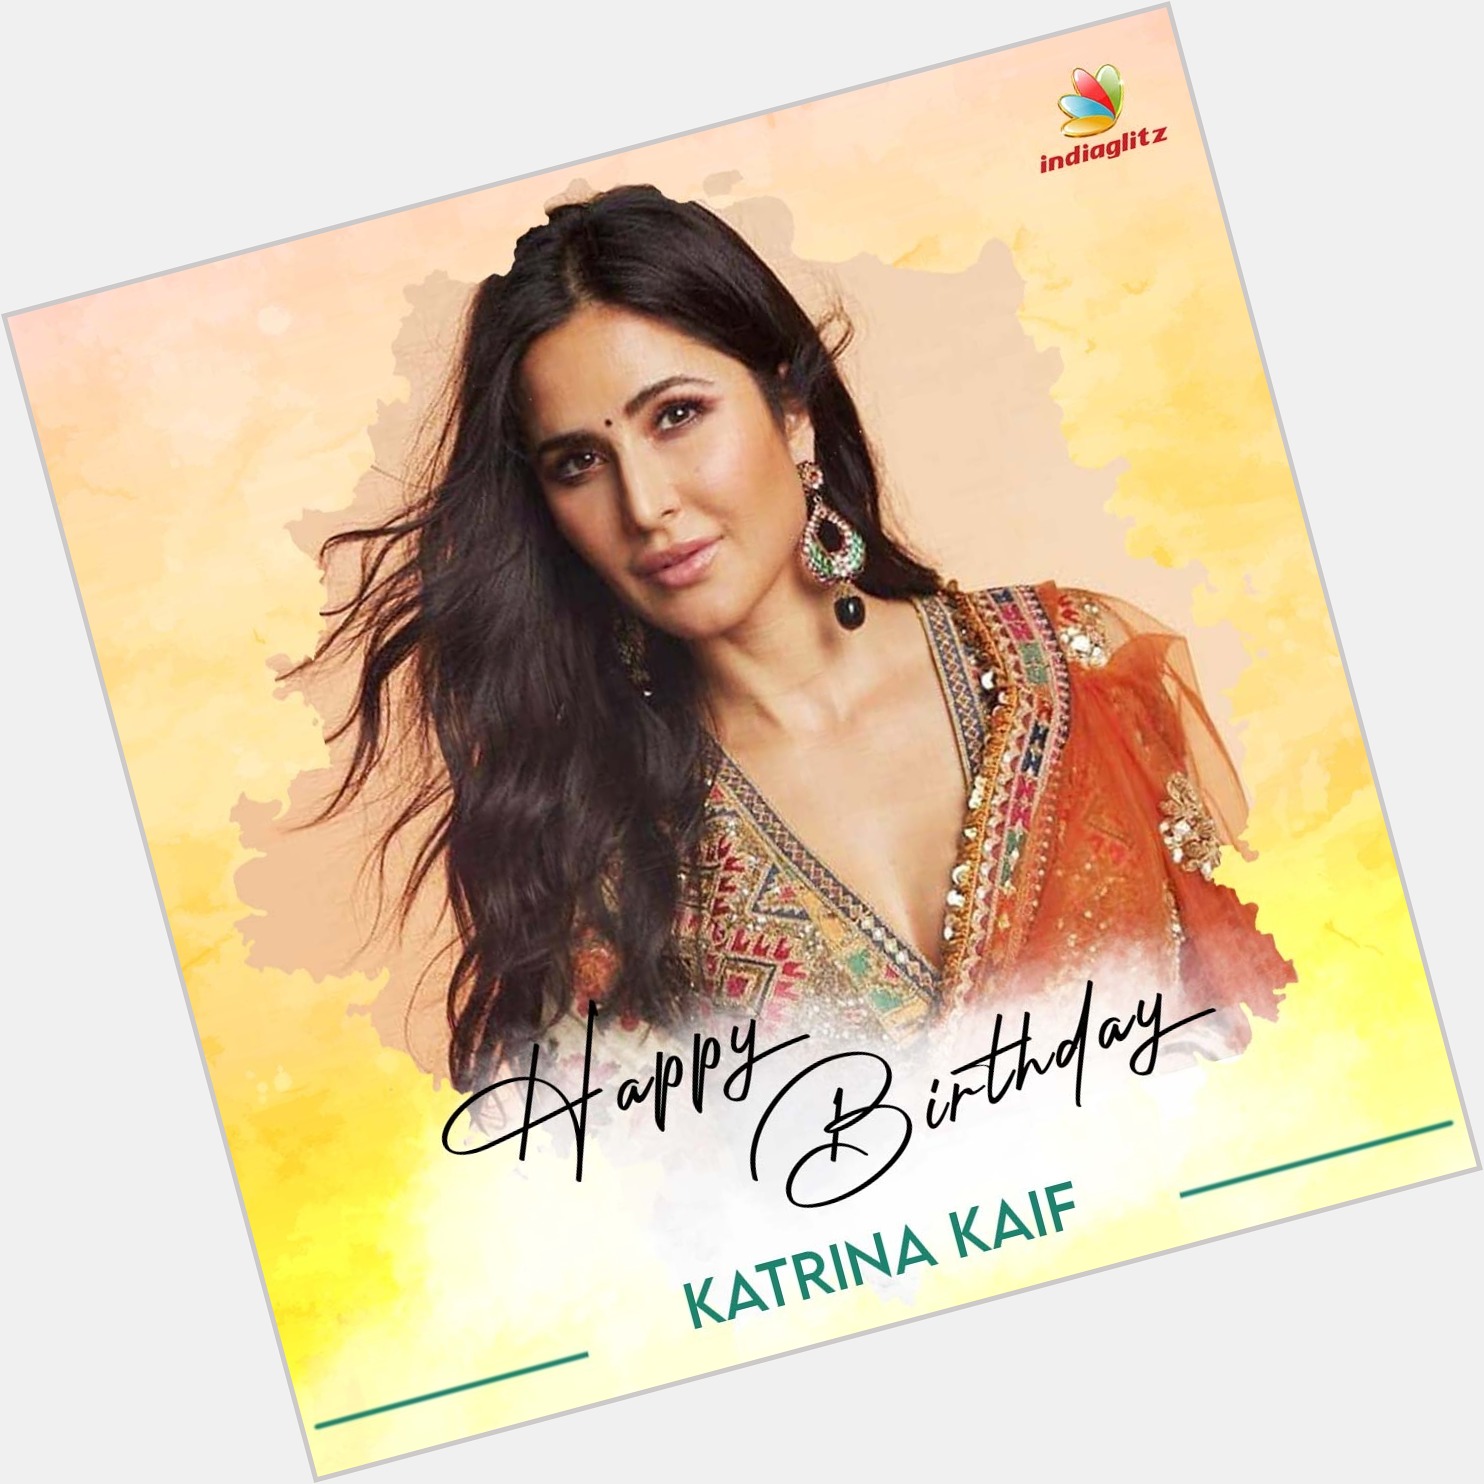 Wishing Actress Katrina Kaif a Very Happy Birthday   